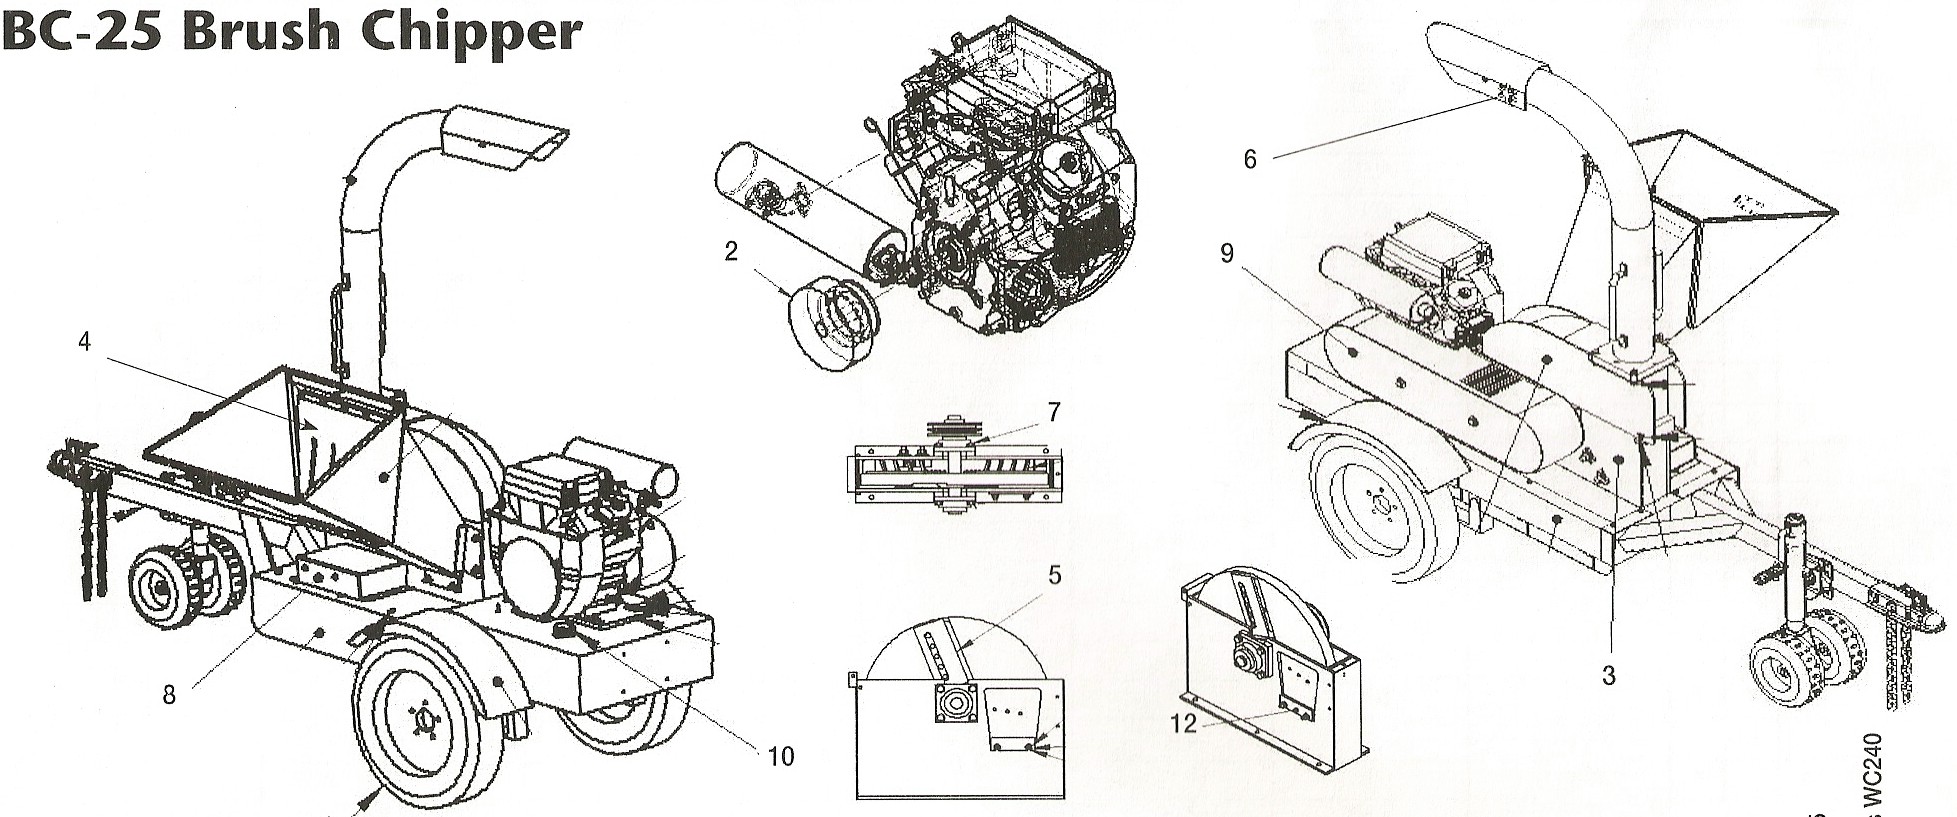 Toro BC-25 Brush Chipper Parts Diagram